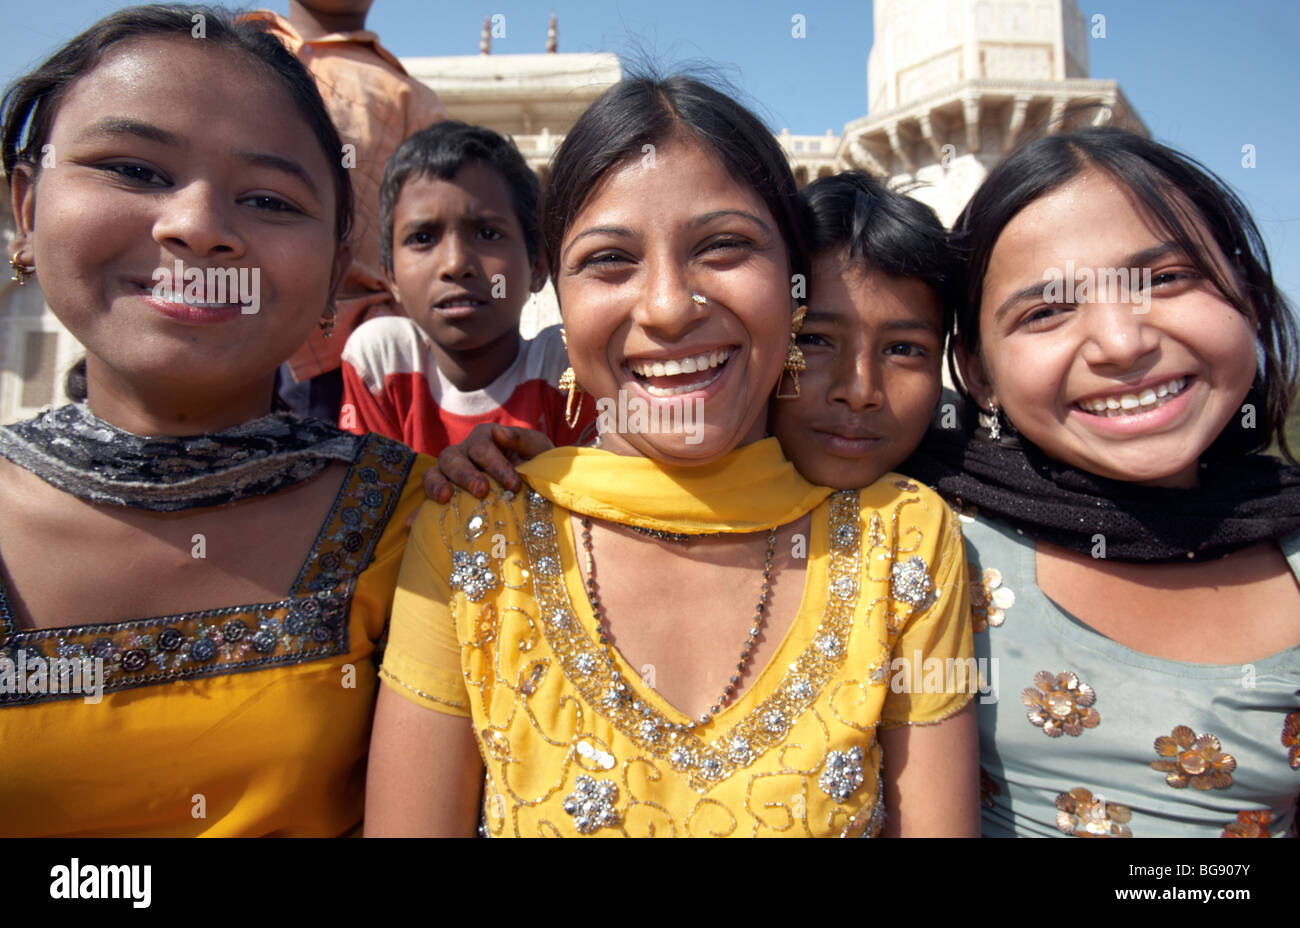 Indischen Jugendlichen Taj Mahal Agra Indien Asien Stockfoto